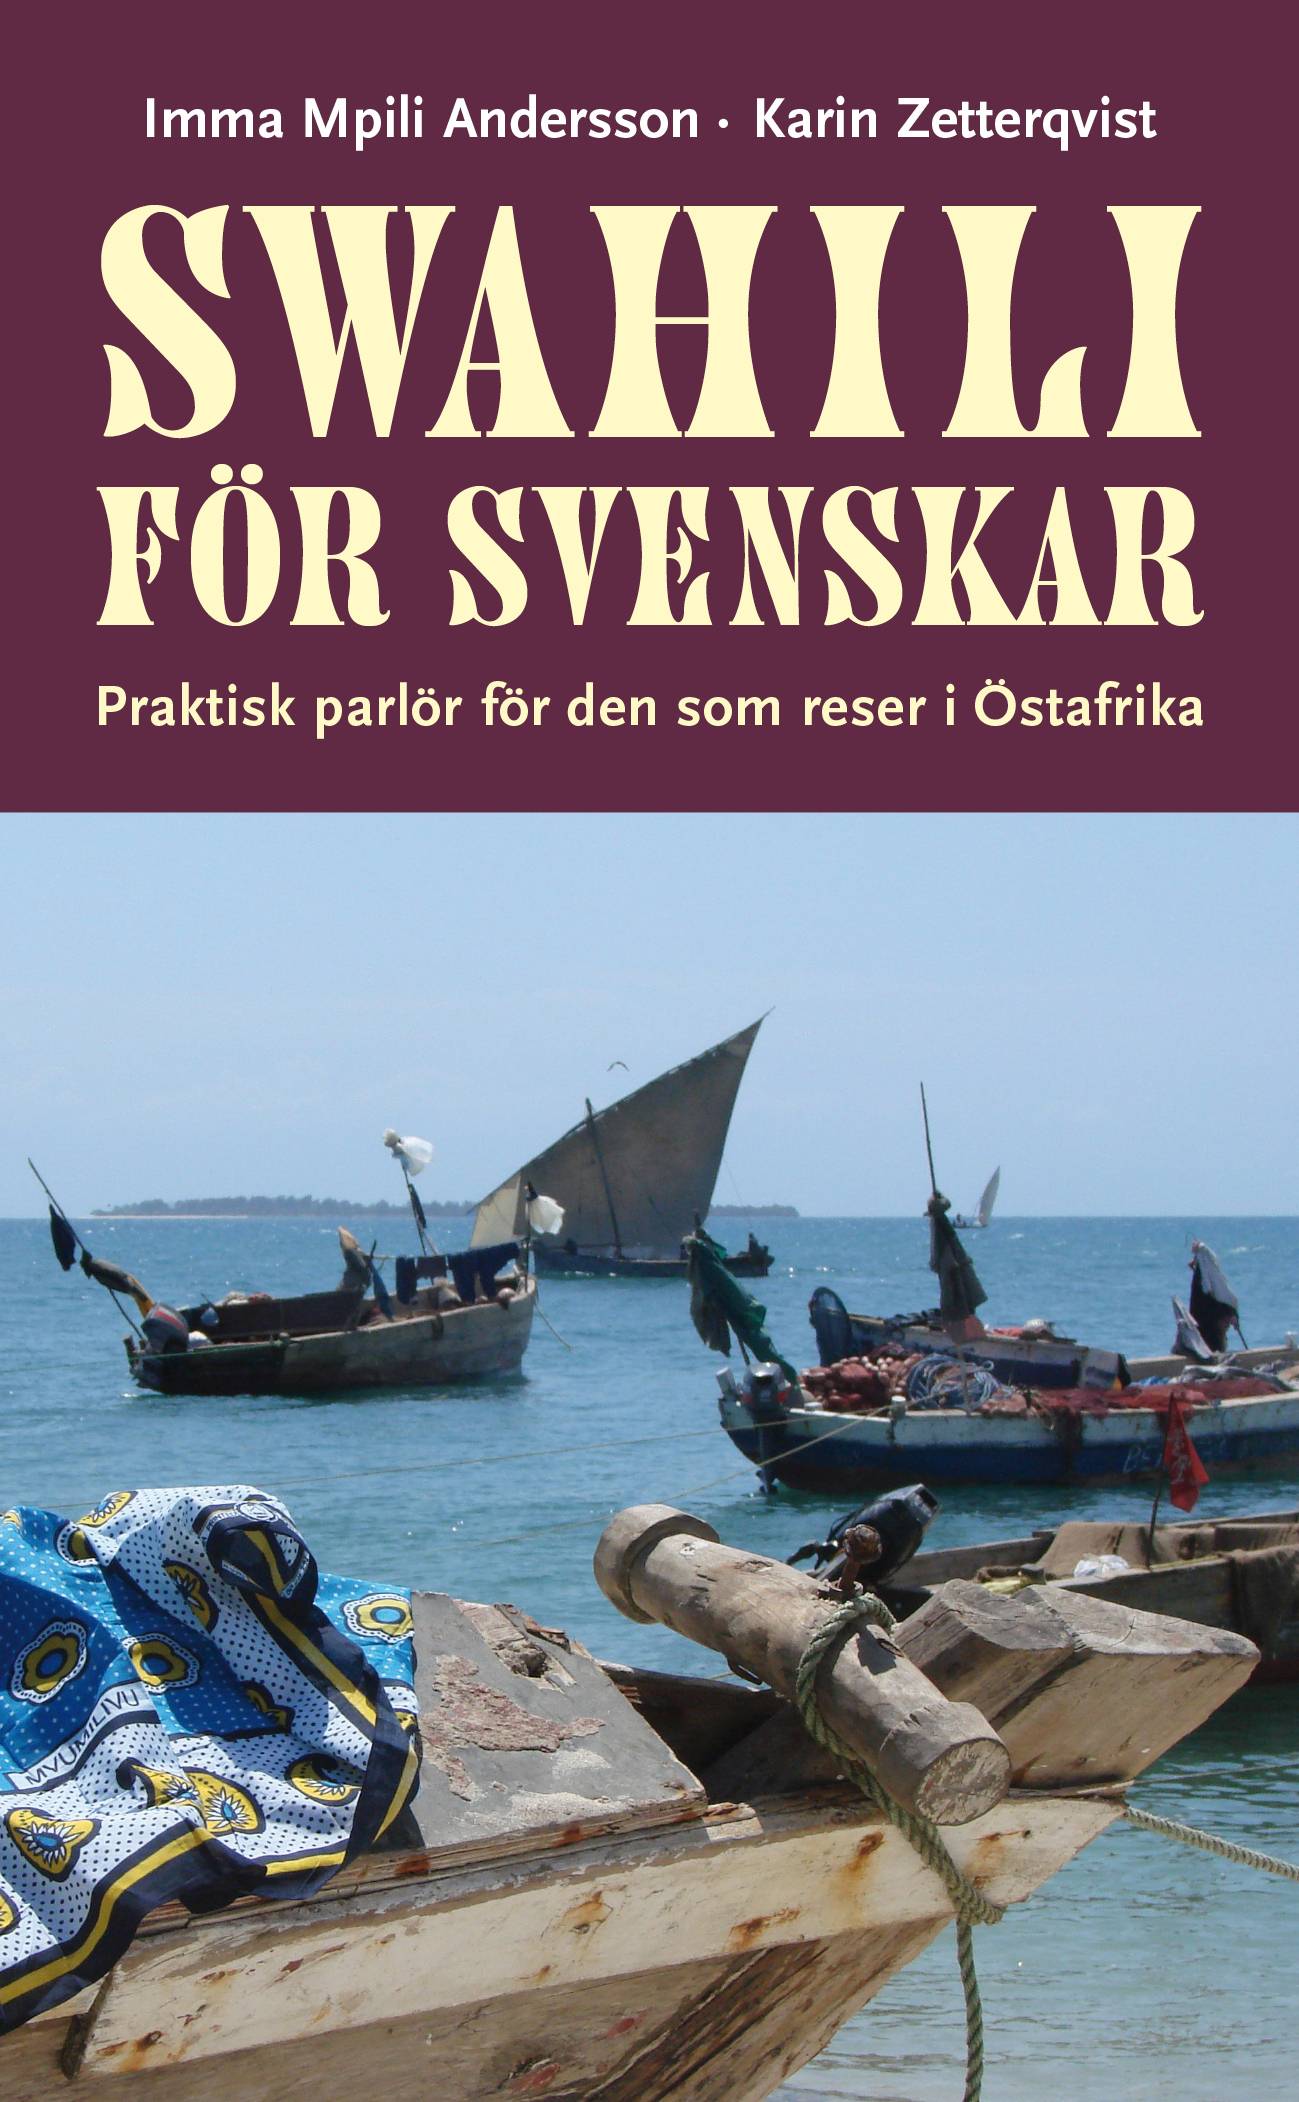 Swahili för svenskar : praktisk parlör för den som reser i Östafrika